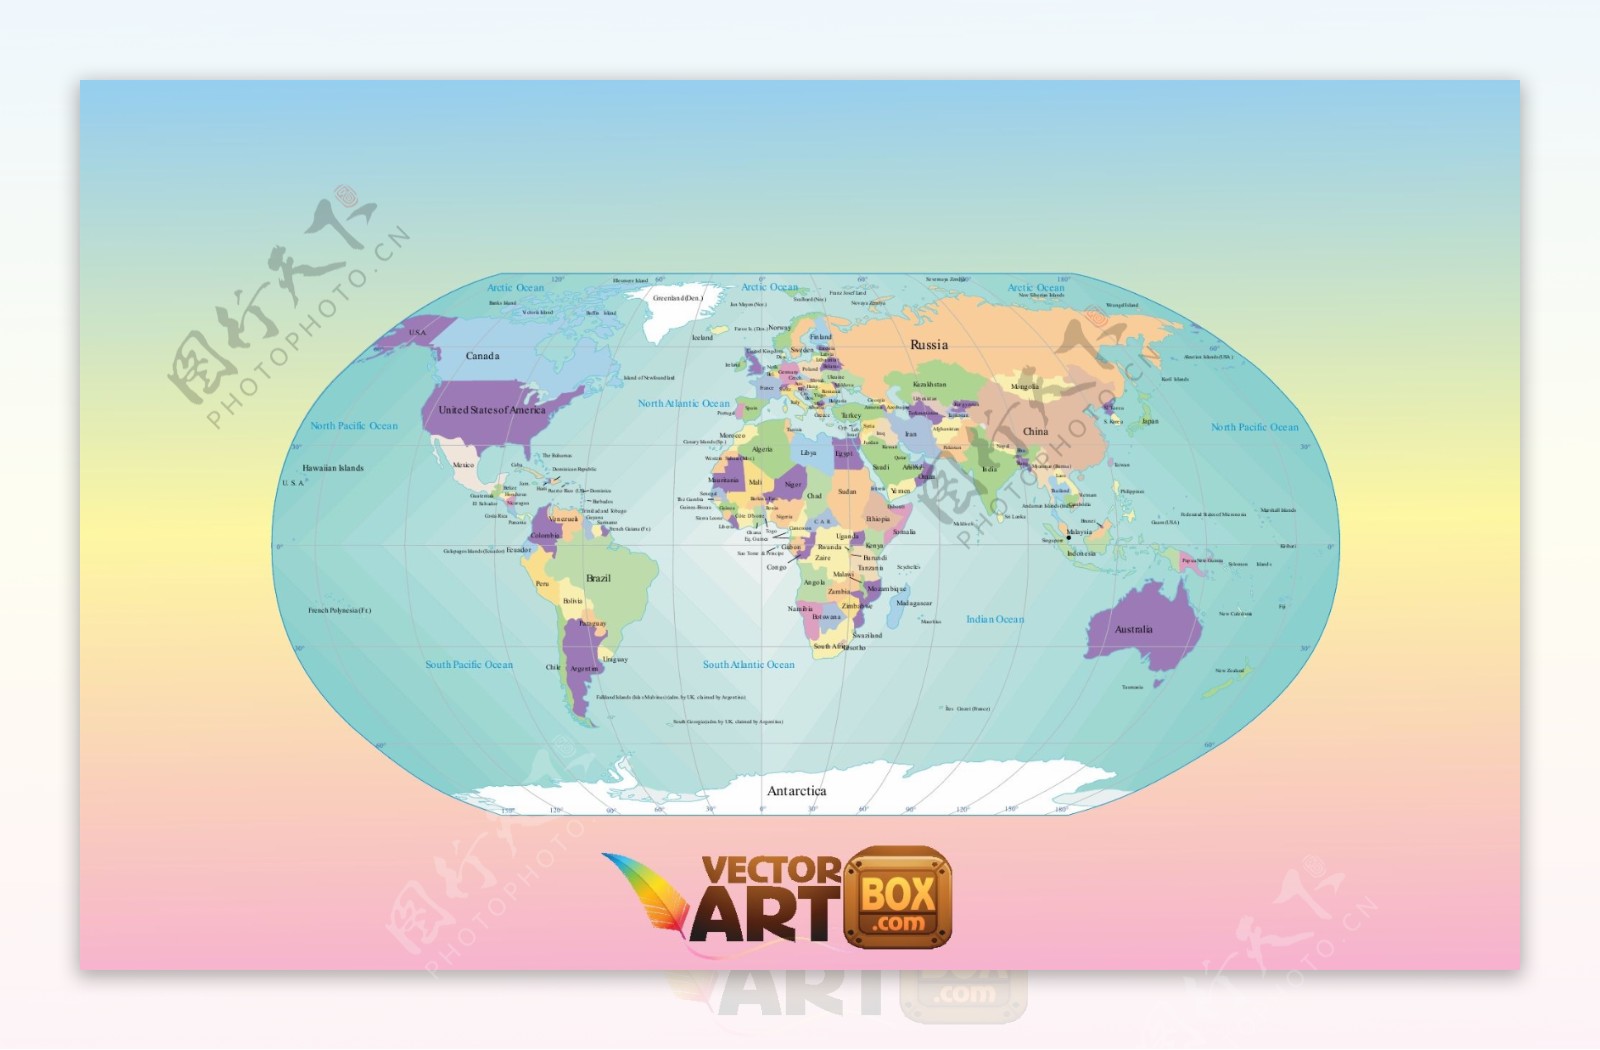 世界地图设计